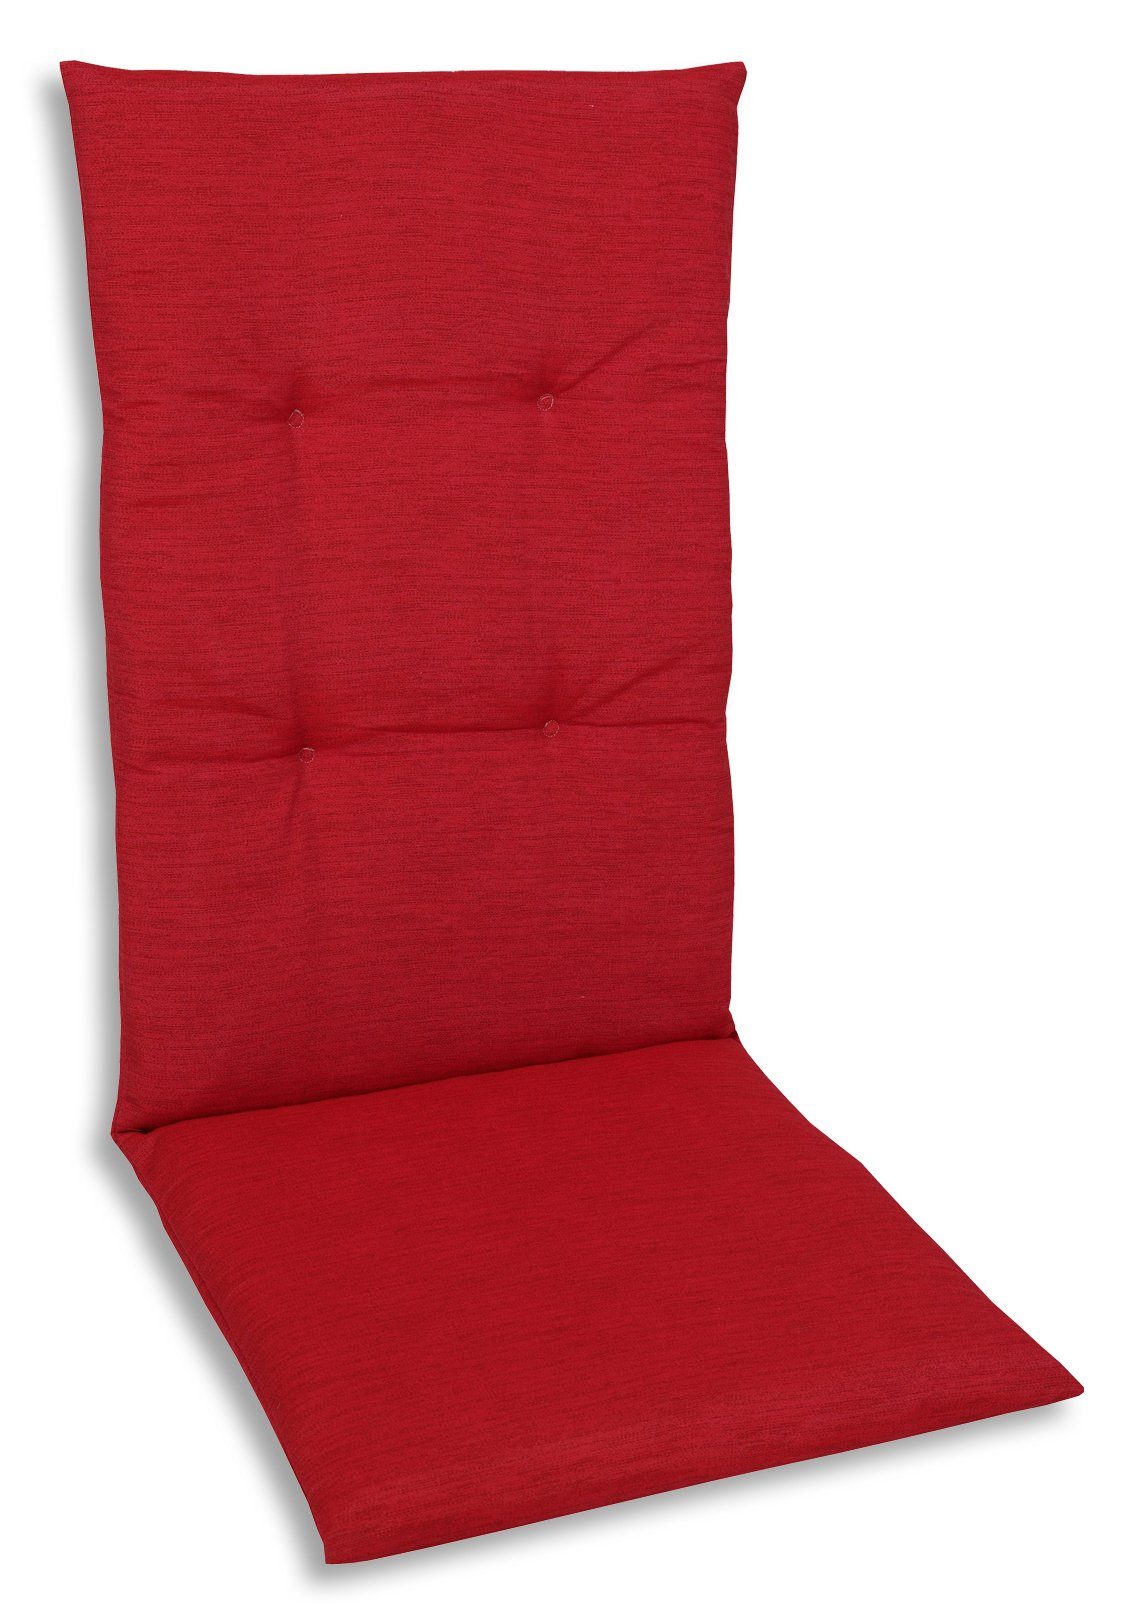 GO-DE Hochlehnerauflage 15809 rot Gartenstuhl Auflagen Kissen Polster Einlage Made in Germany, für Hochlehner-Stühle